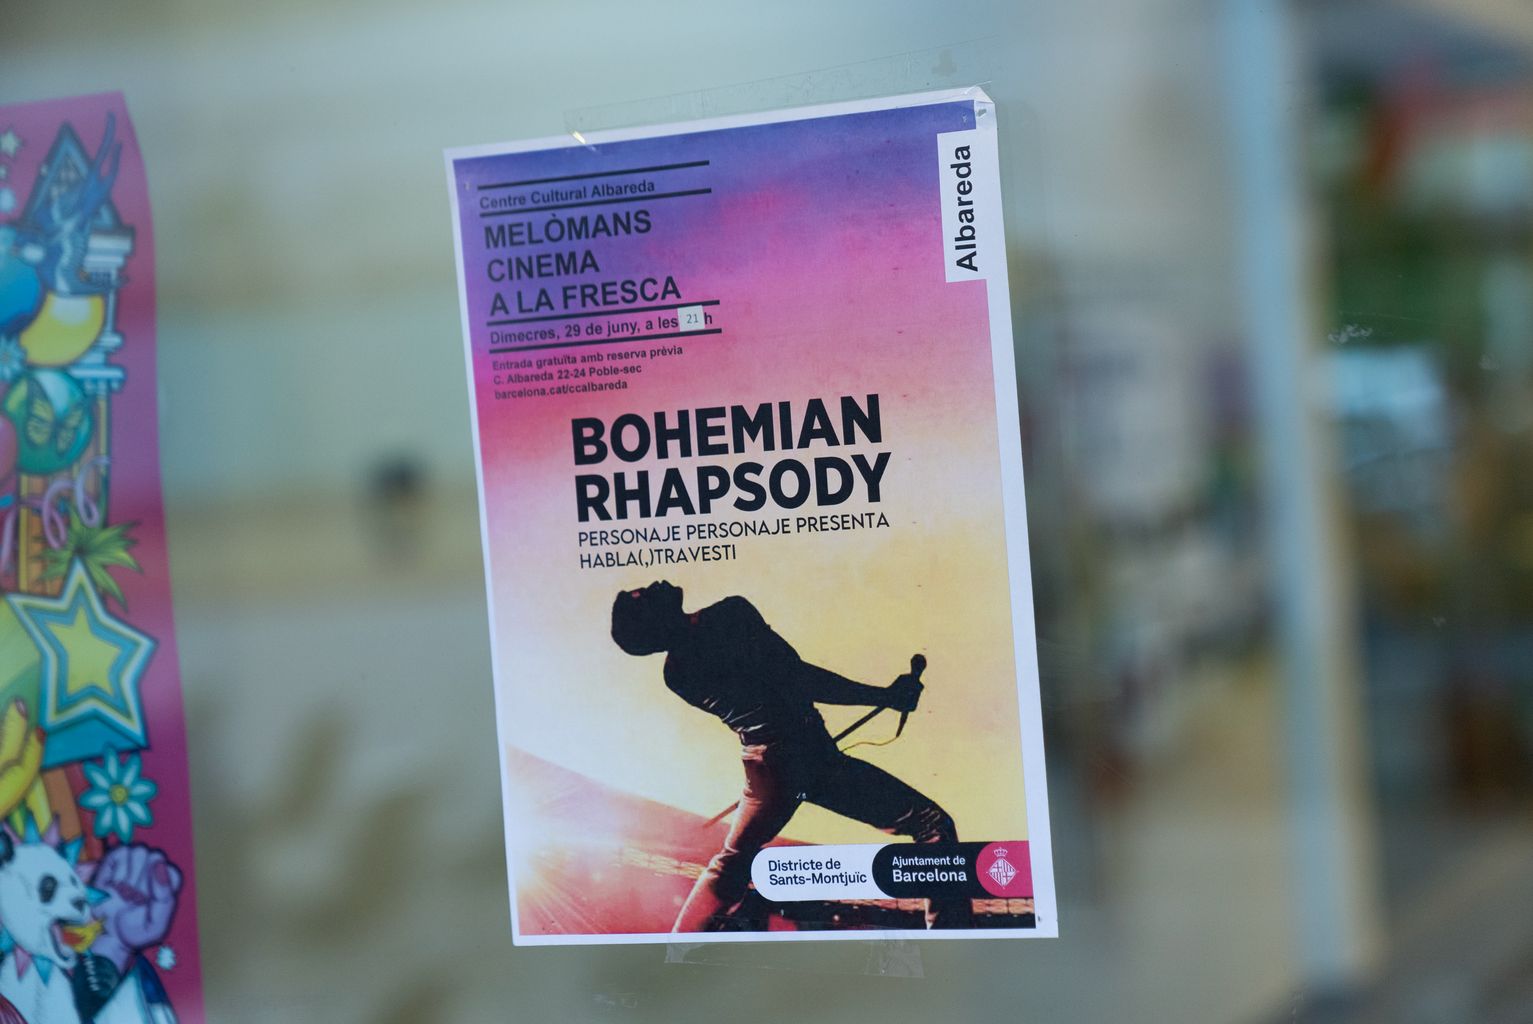 Cartell del cicle Melòmans informant de la programació de la pel·lícula "Bohemian Rhapsody"